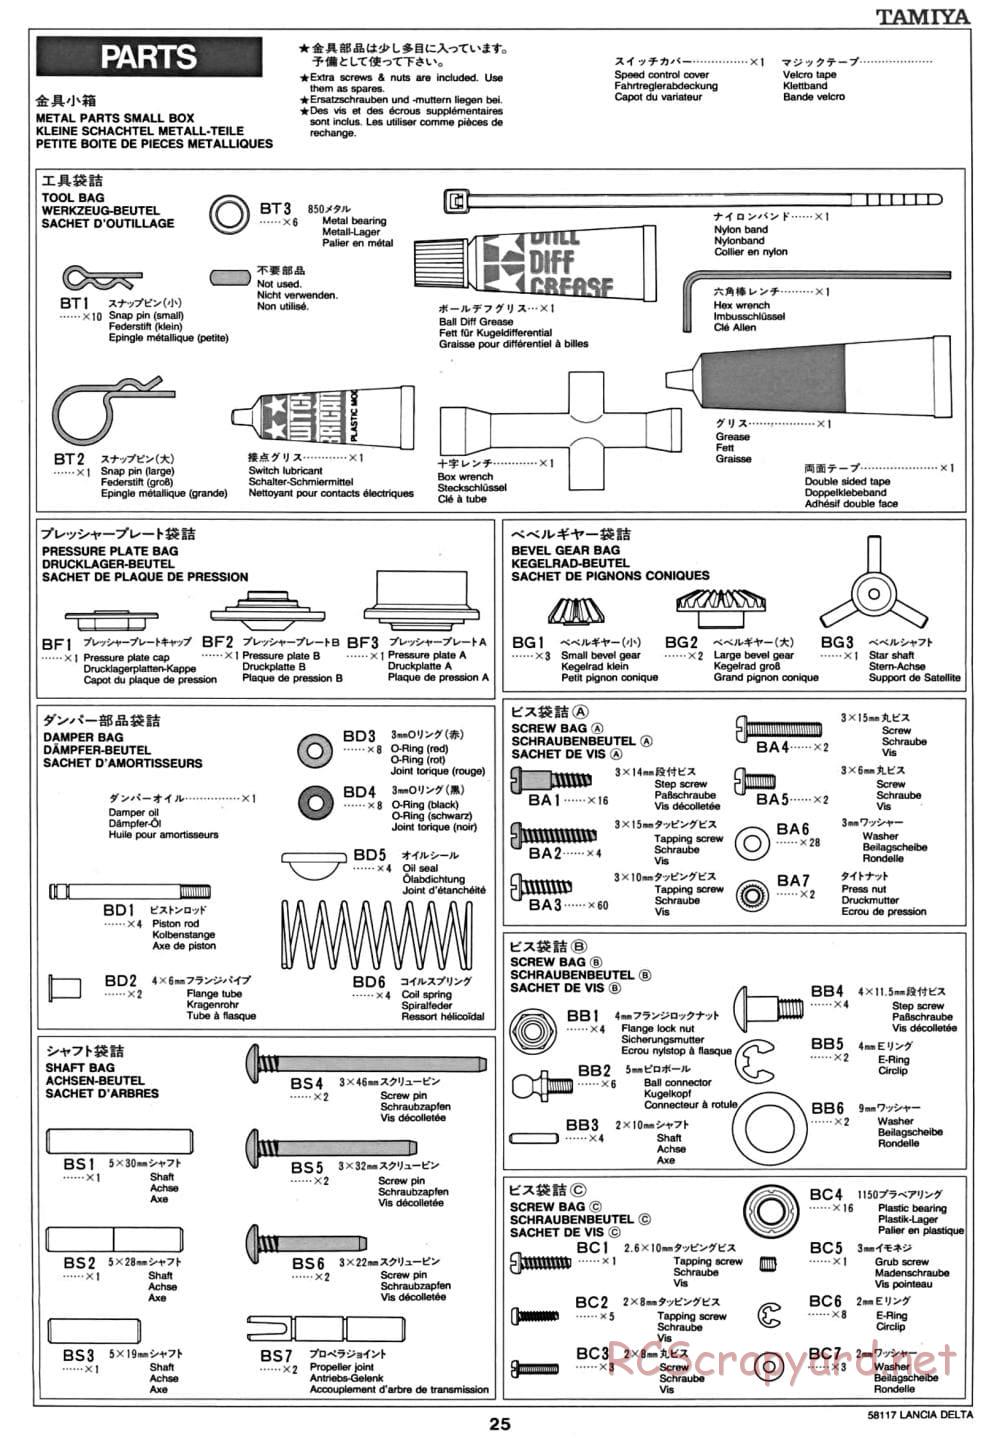 Tamiya - Lancia Delta HF Integrale - TA-01 Chassis - Manual - Page 26